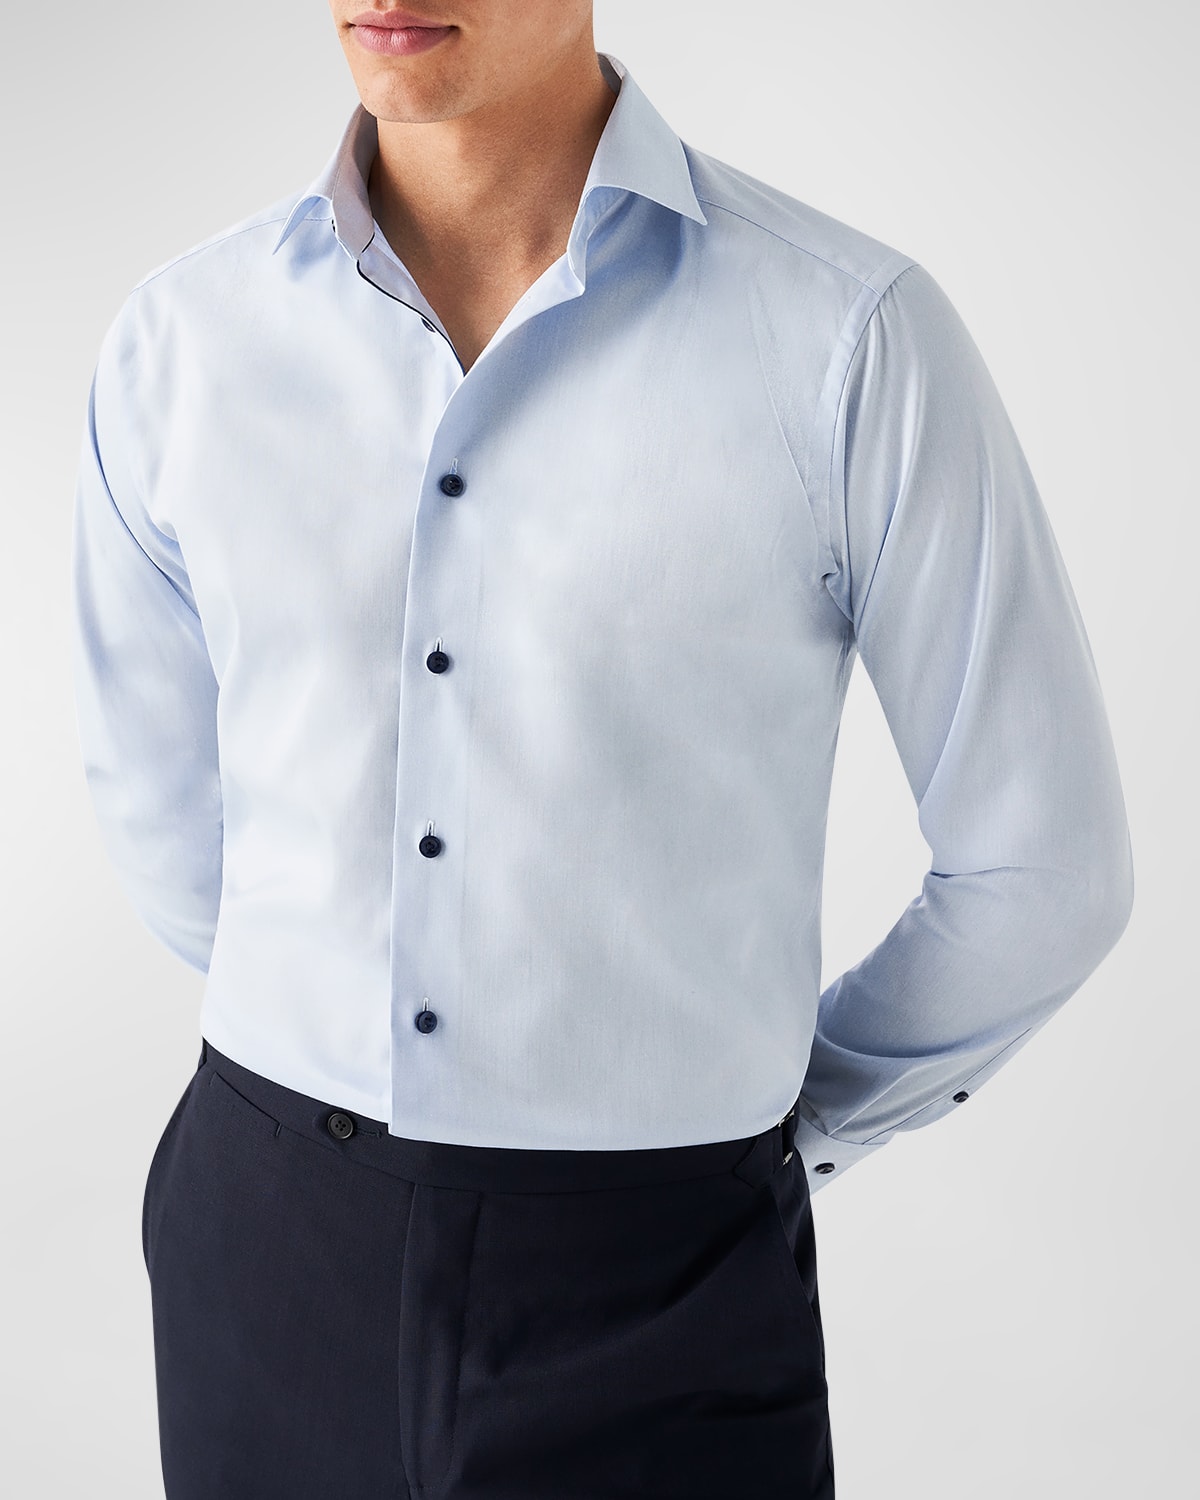 Men's Slim Fit Textured Twill Dress Shirt